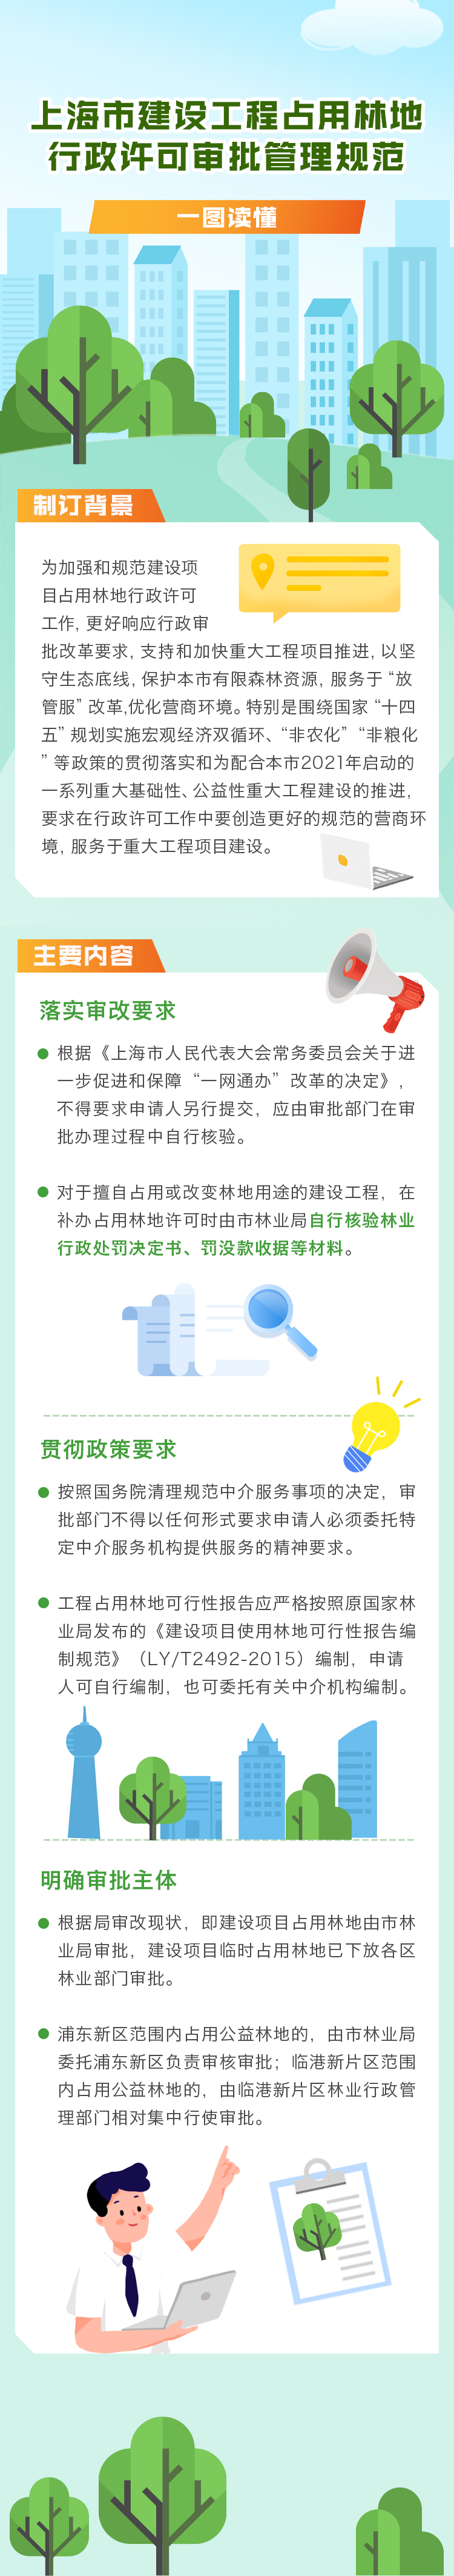 关于印发《上海市建设工程占用林地 行政许可审批管理规范》的通知.jpg